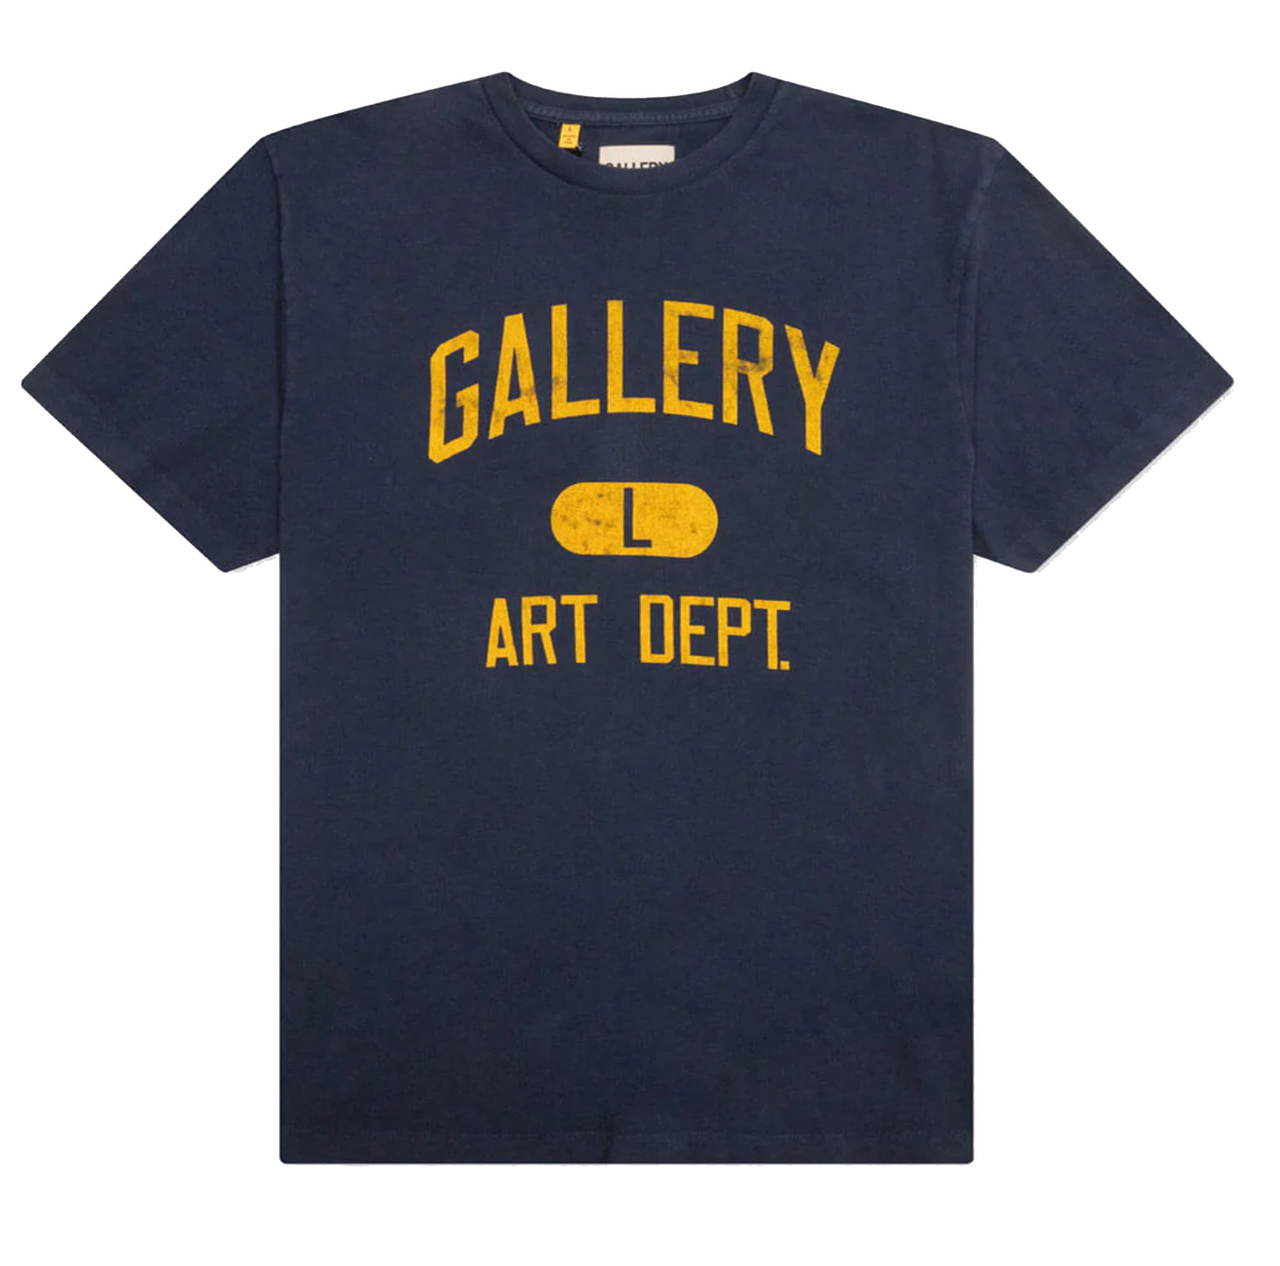 Gallery Dept. Art Dept Tee Deep Navy